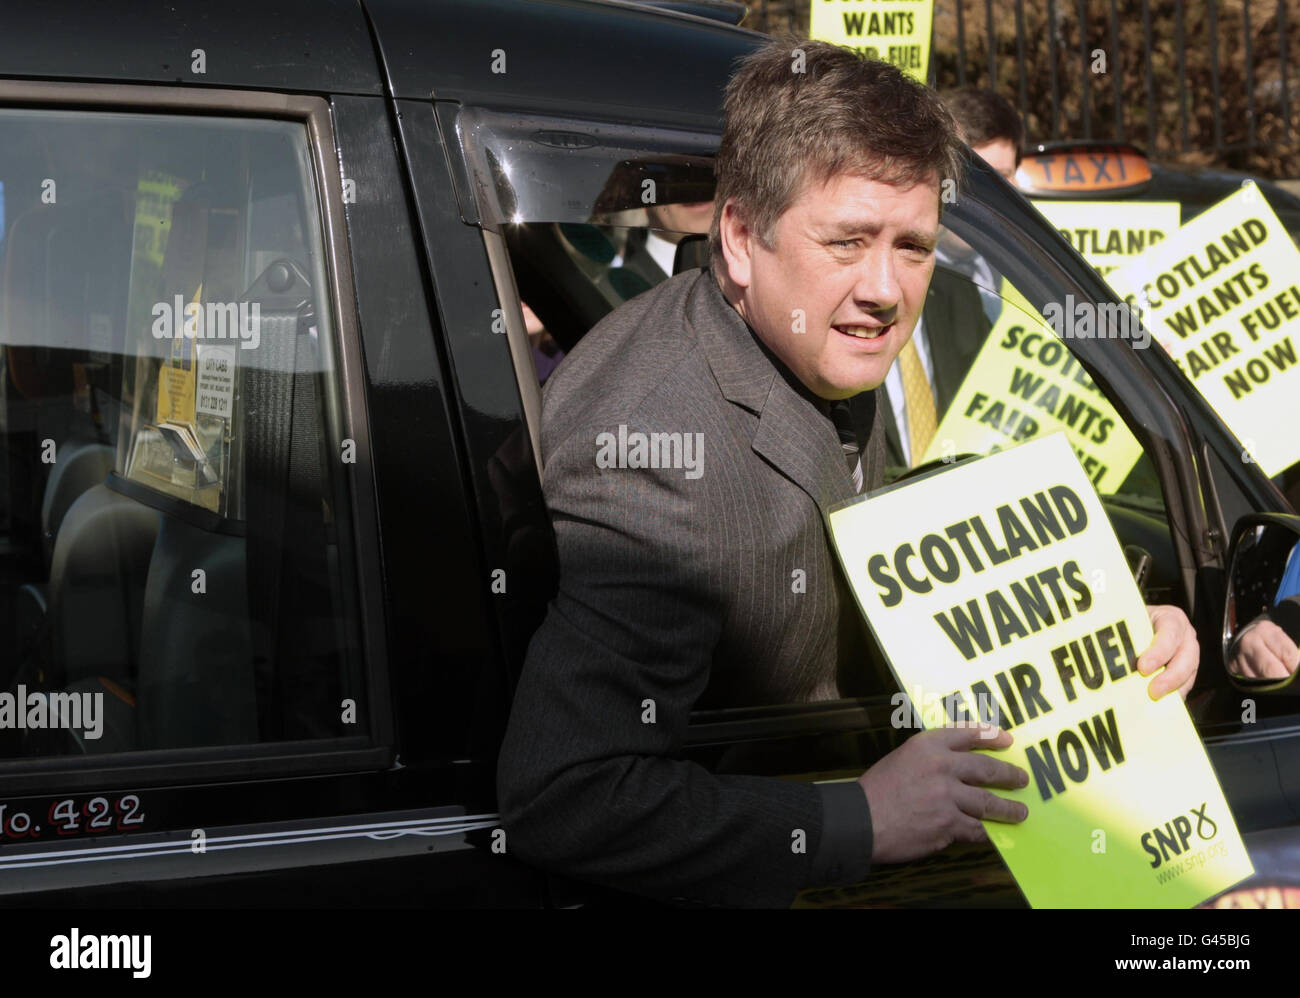 Keith Brown, ministre des Transports du SNP, se joint à une manifestation des chauffeurs de taxi devant le Parlement écossais à Édimbourg.Le gouvernement SNP va appeler Westminster à abandonner son projet d'augmentation des droits sur le carburant dans le cadre d'un débat à Holyrood. Banque D'Images